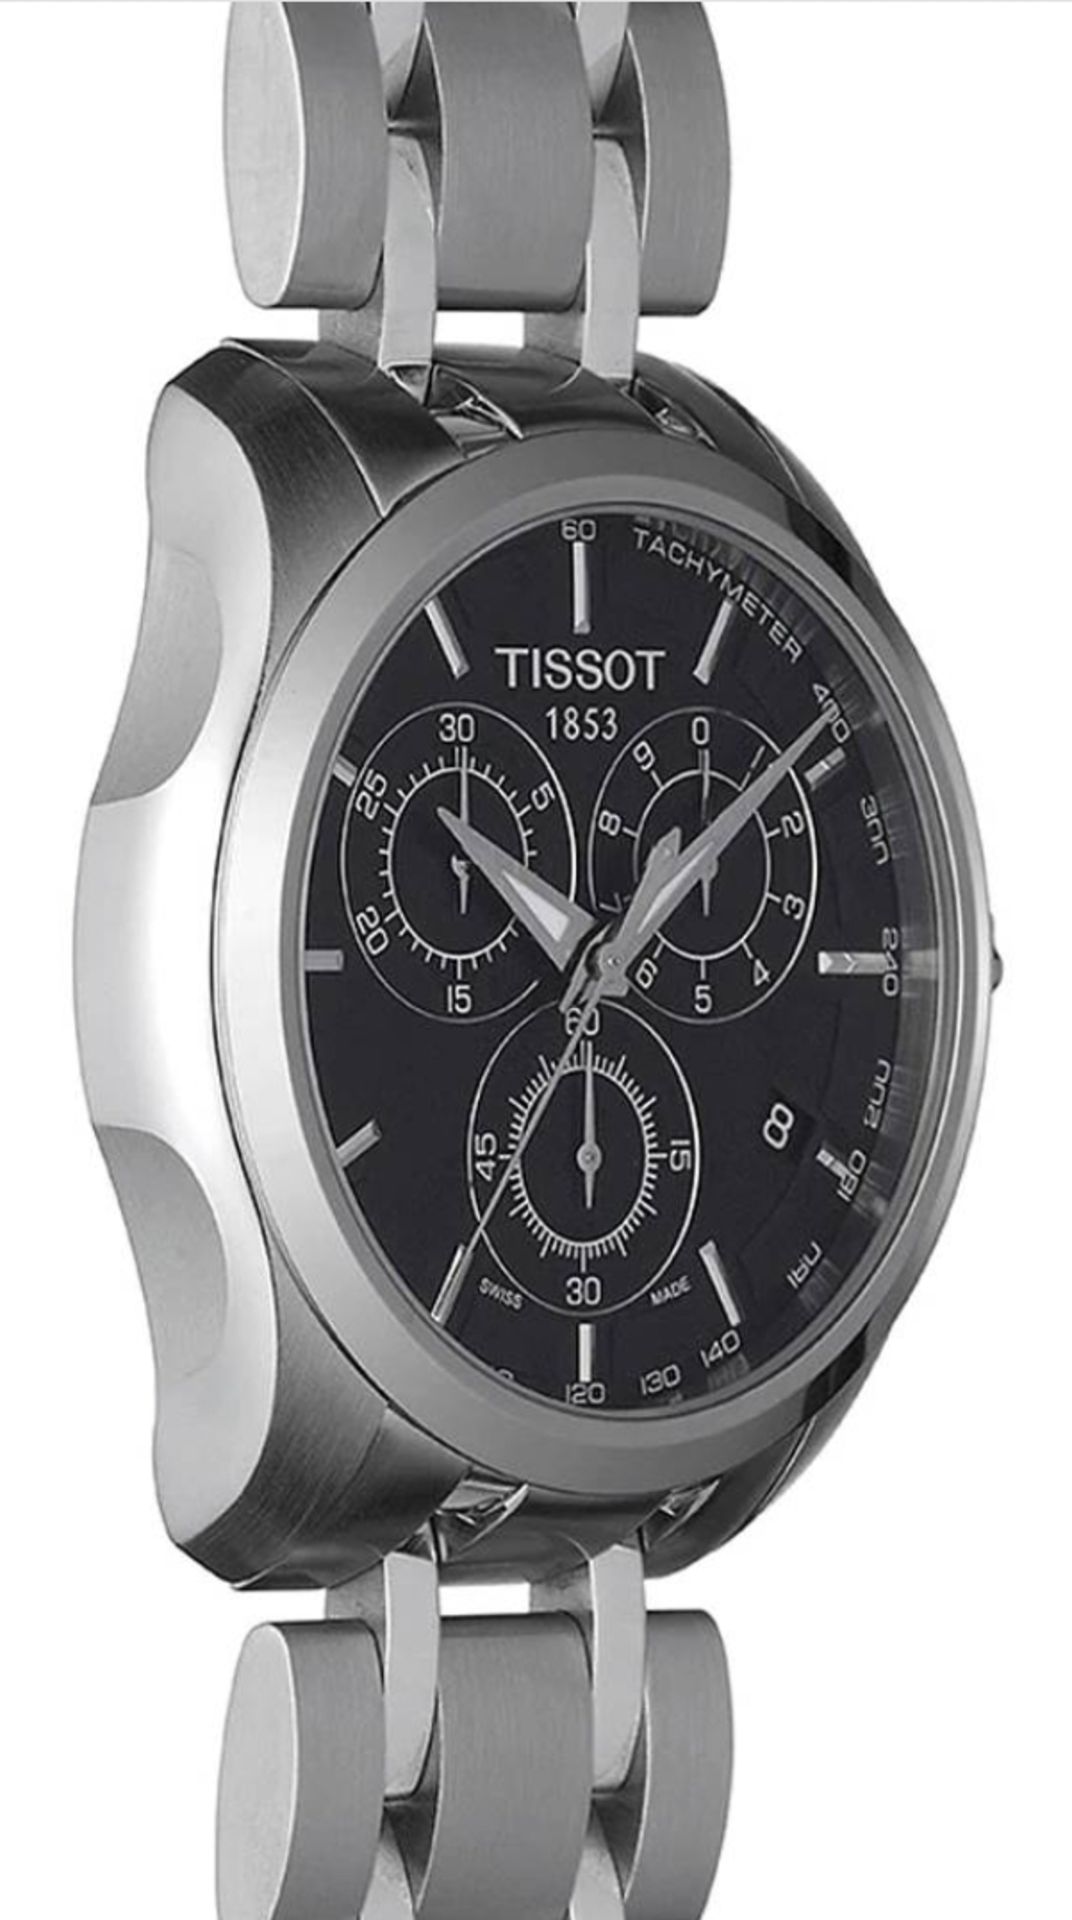 TISSOT T035.617.11.051.00 Men's Couturier Quartz Chronograph Watch - Image 4 of 10